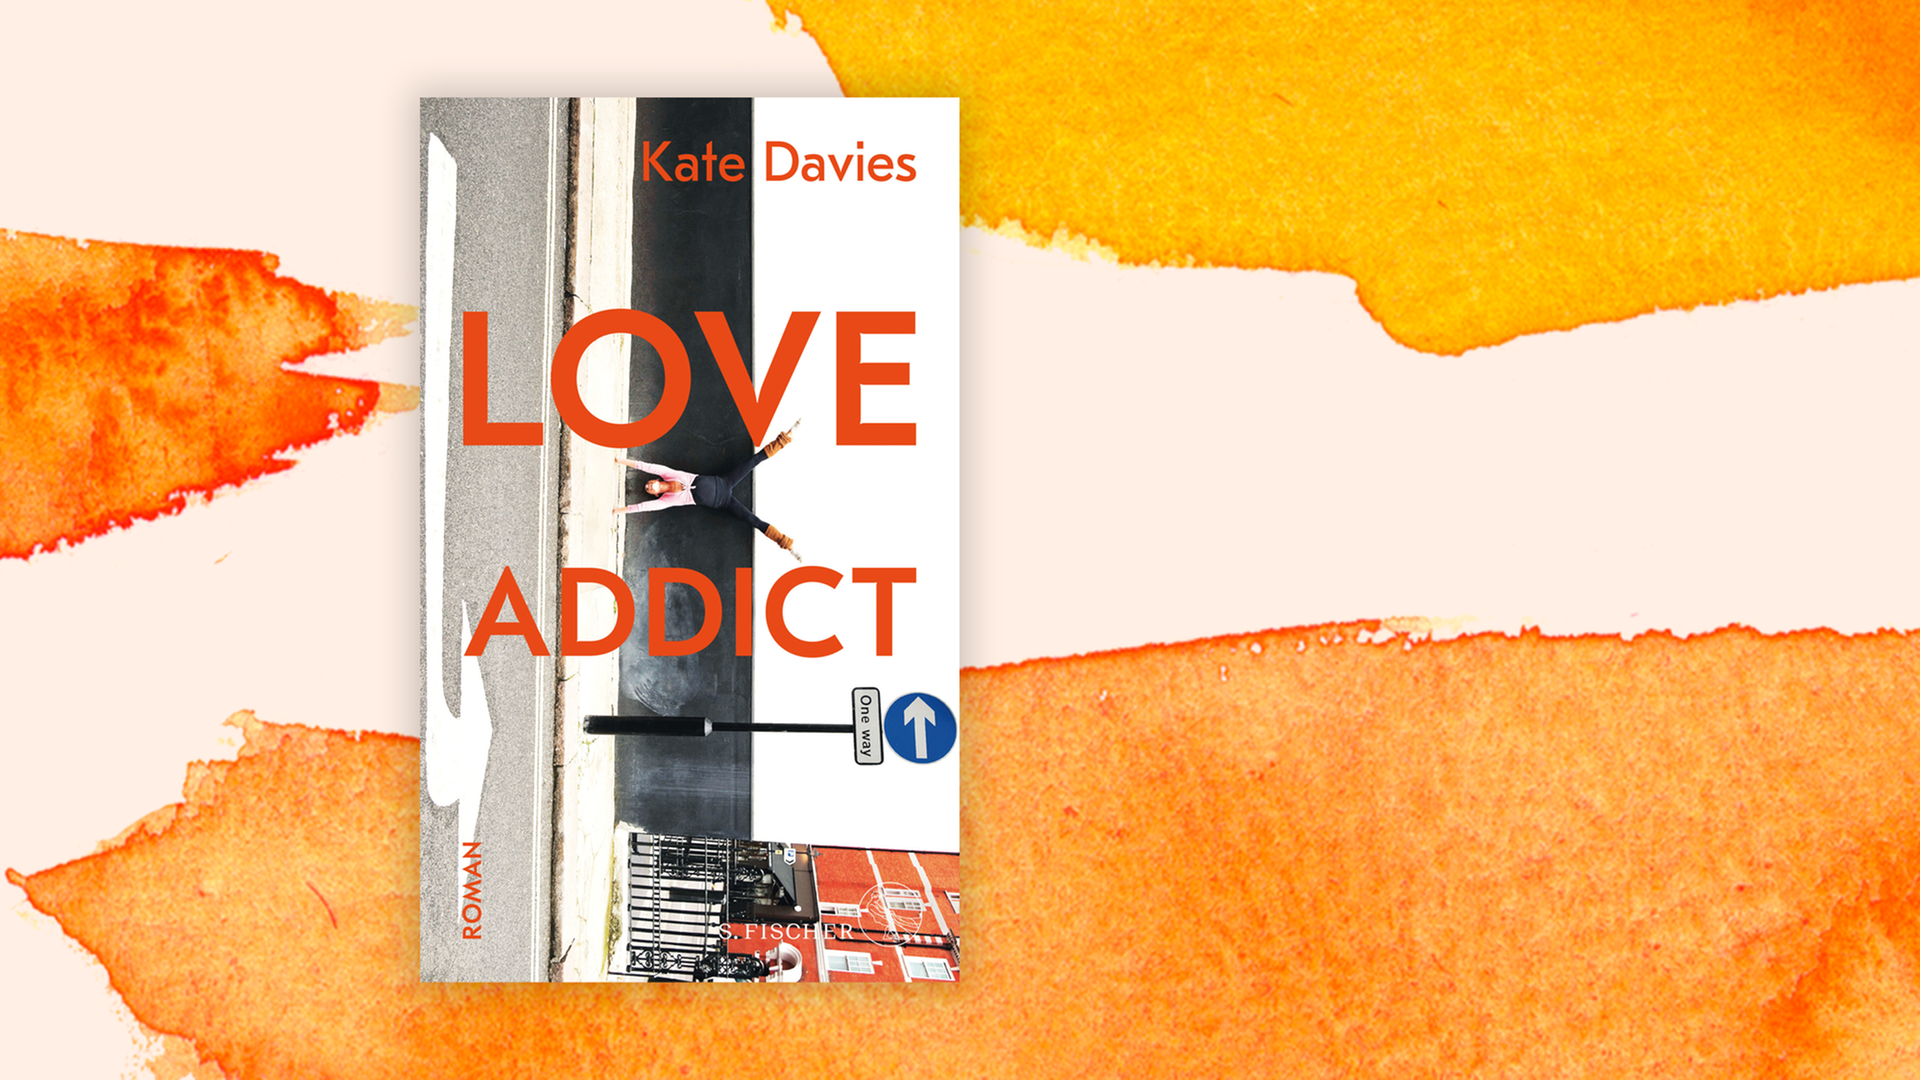 Zu sehen ist das Cover des Buches "Love Addict" von Kate Davies.